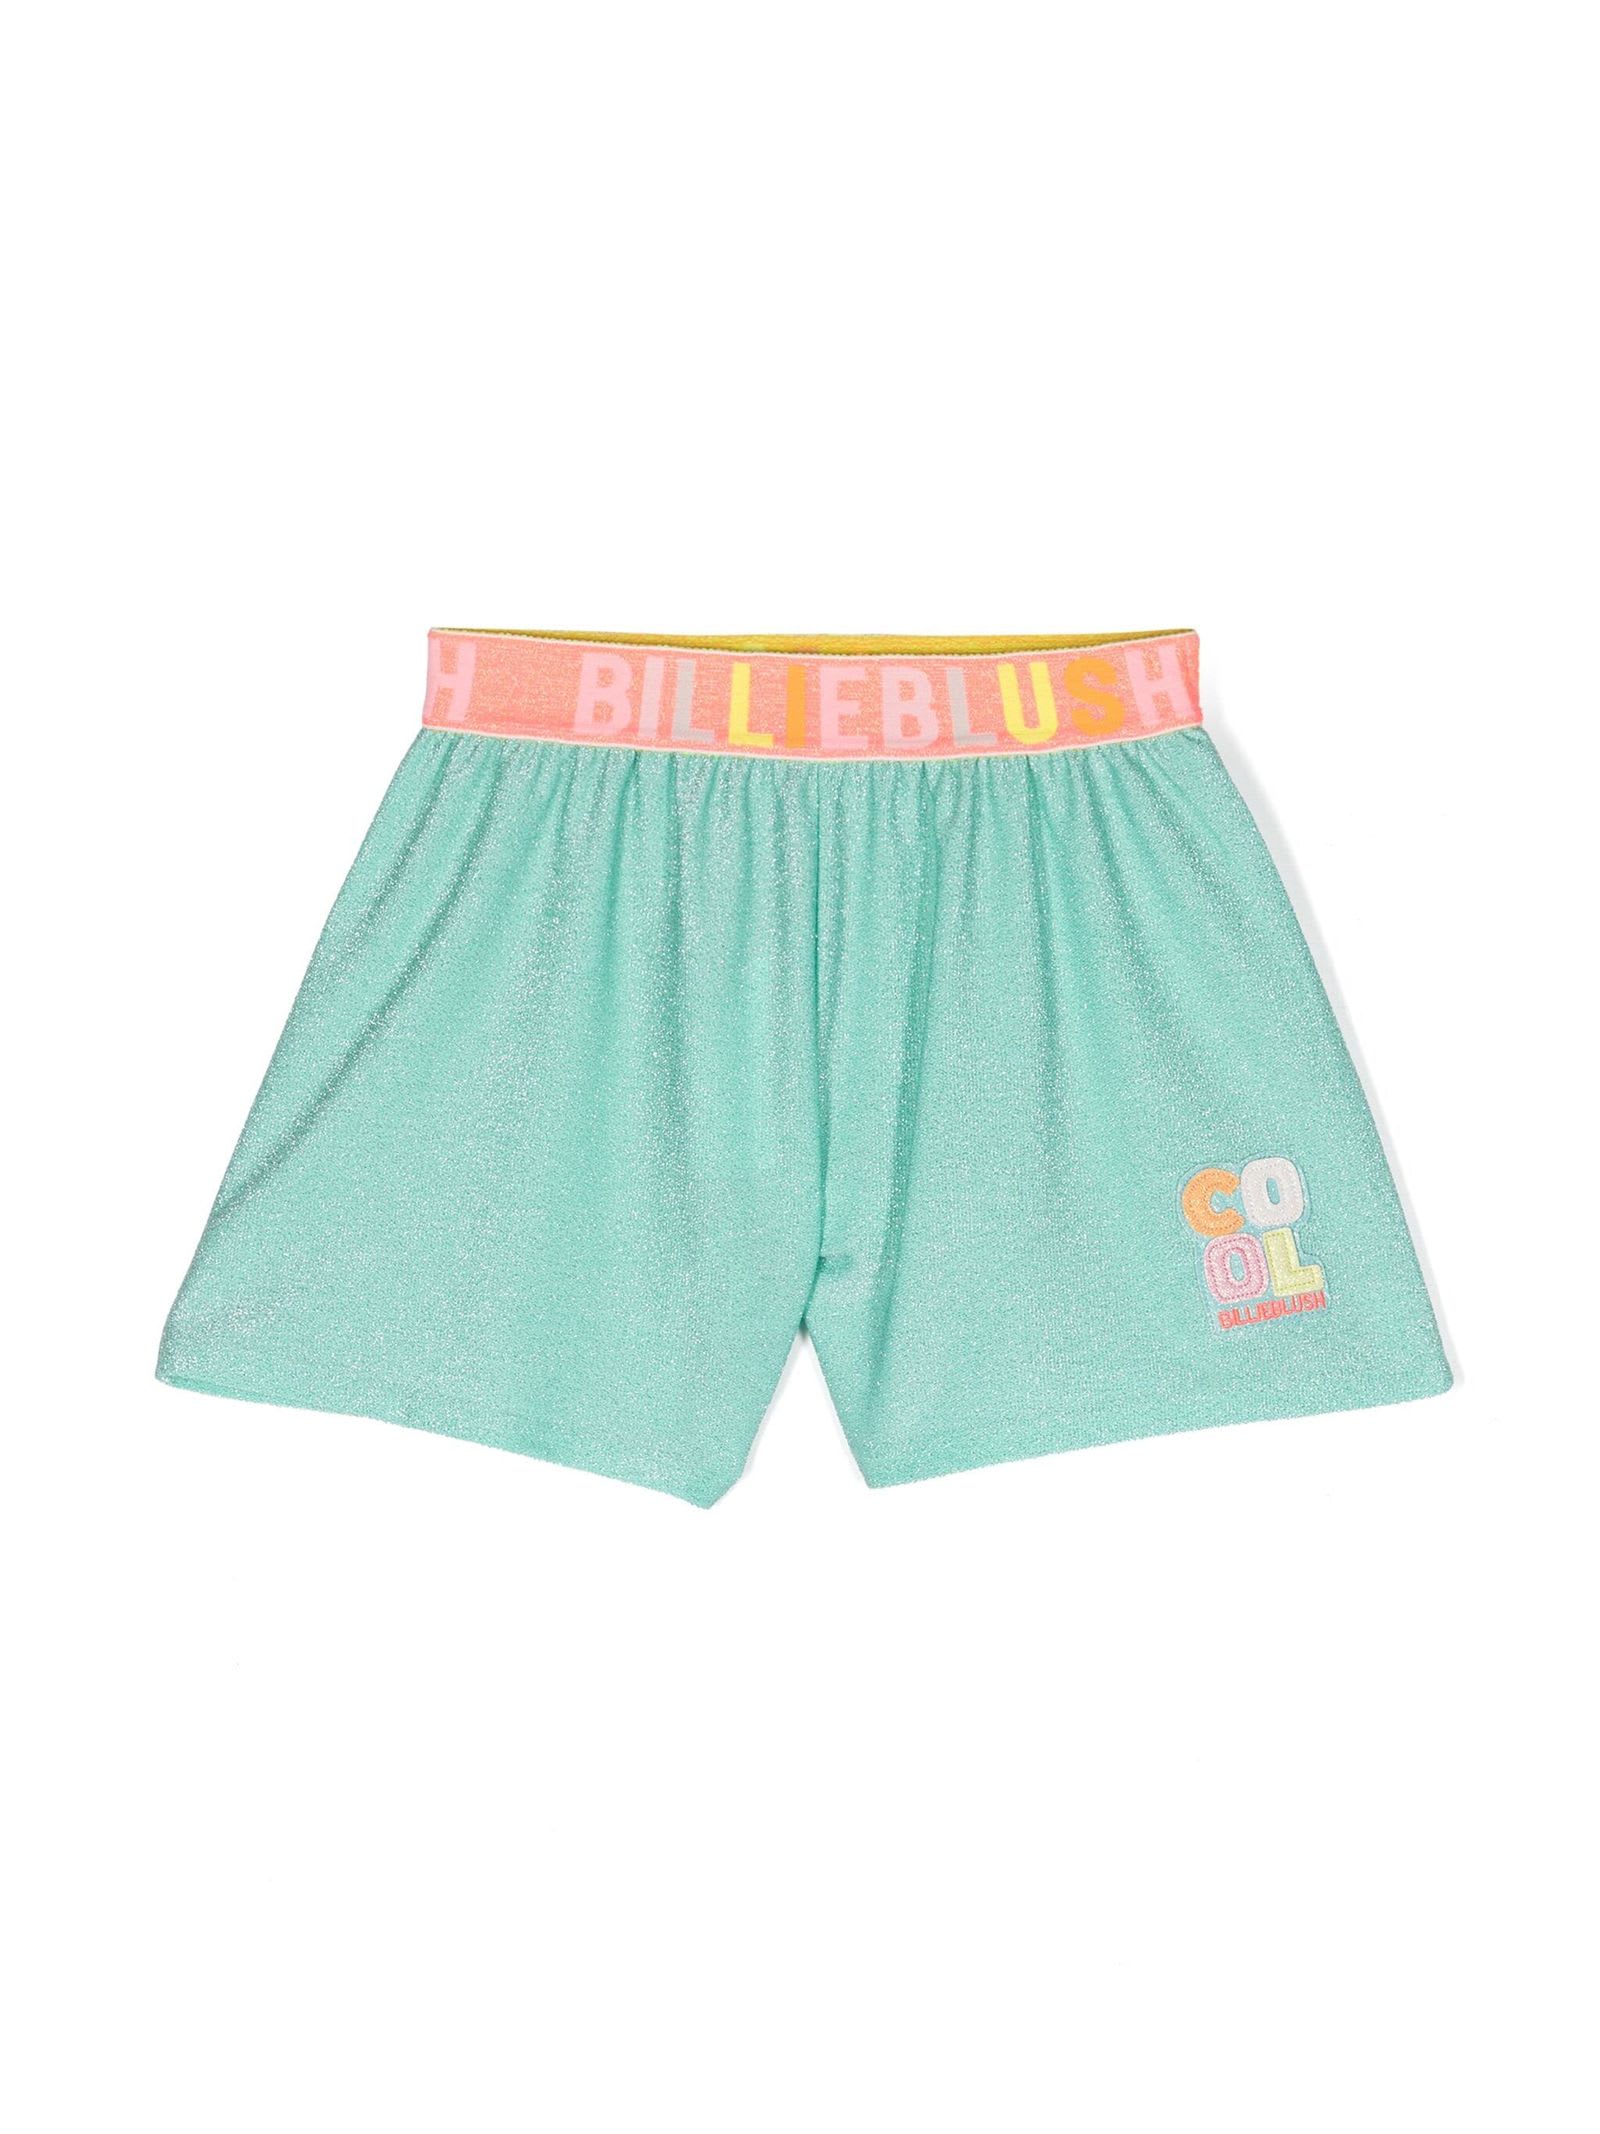 Shop Billieblush Shorts Green